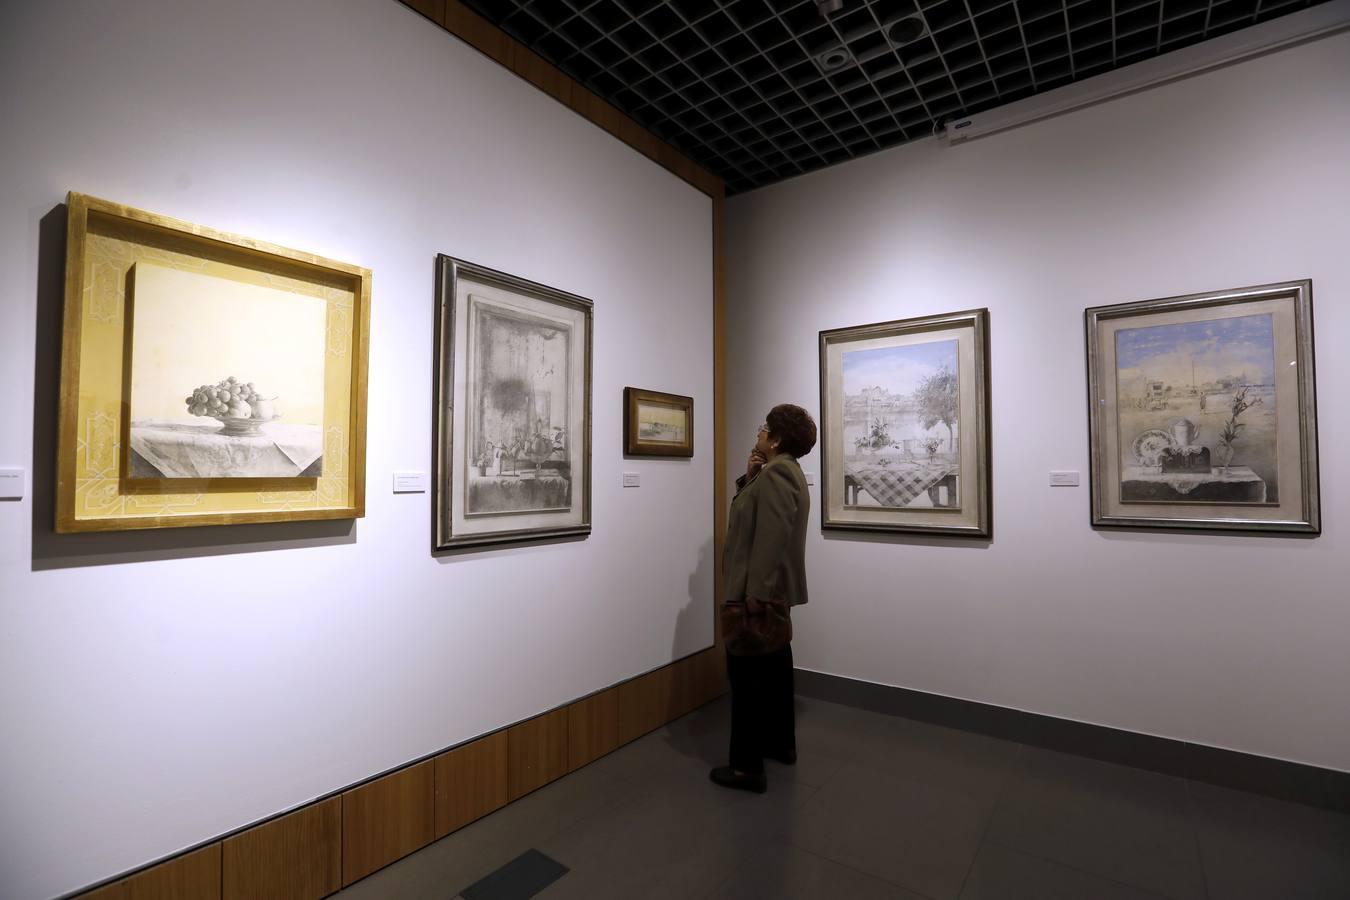 La exposición de Emilio Serrano de la Real Academia de Córdoba, en imágenes